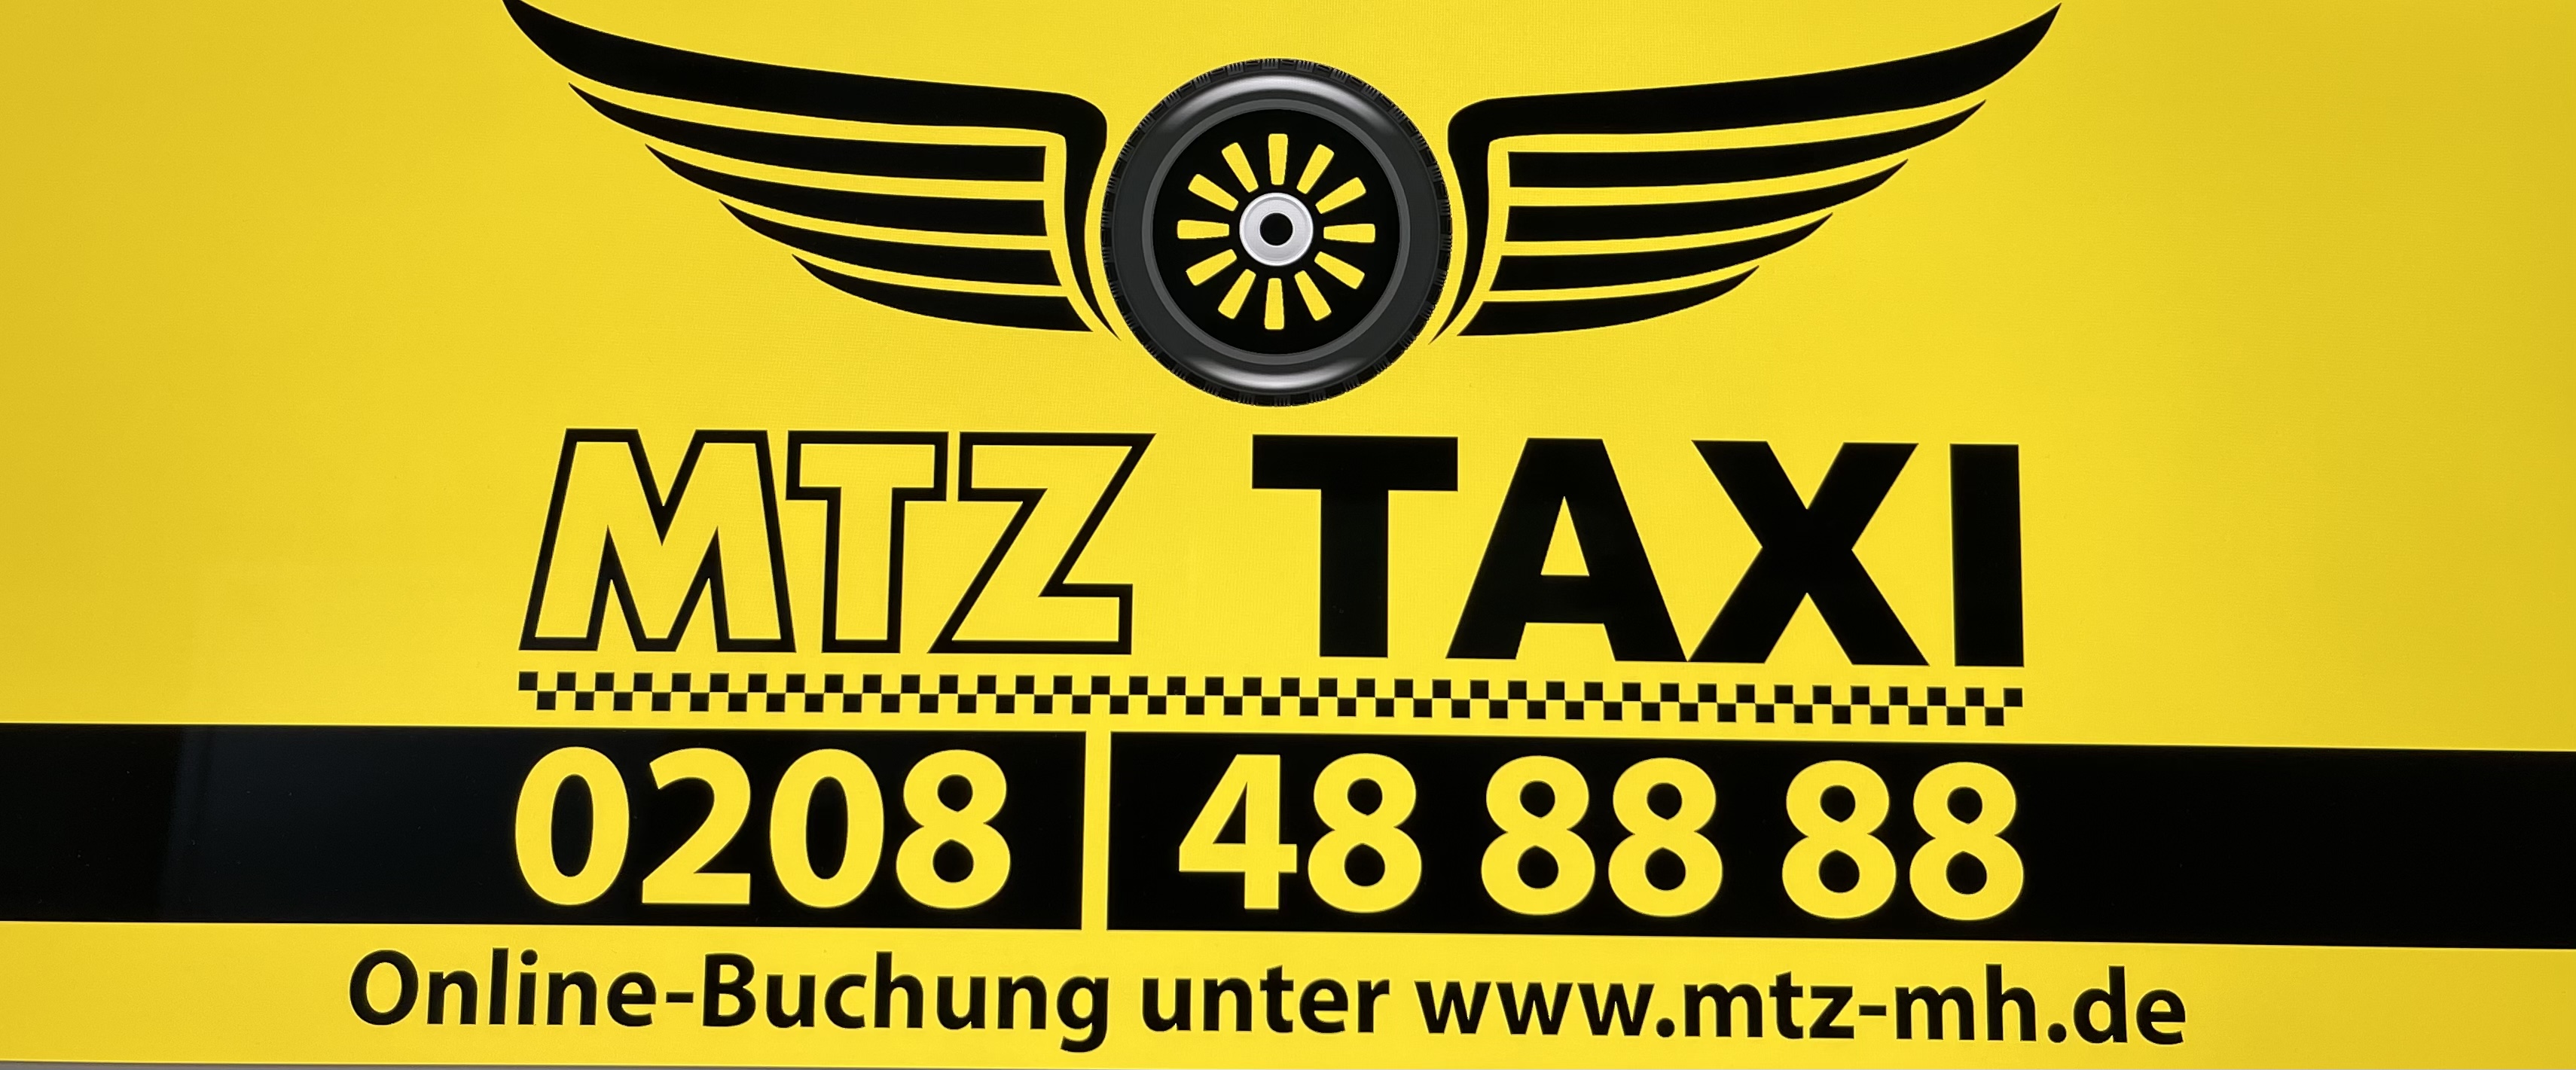 Bild 4 MTZ Taxizentrale GmbH in Mülheim an der Ruhr